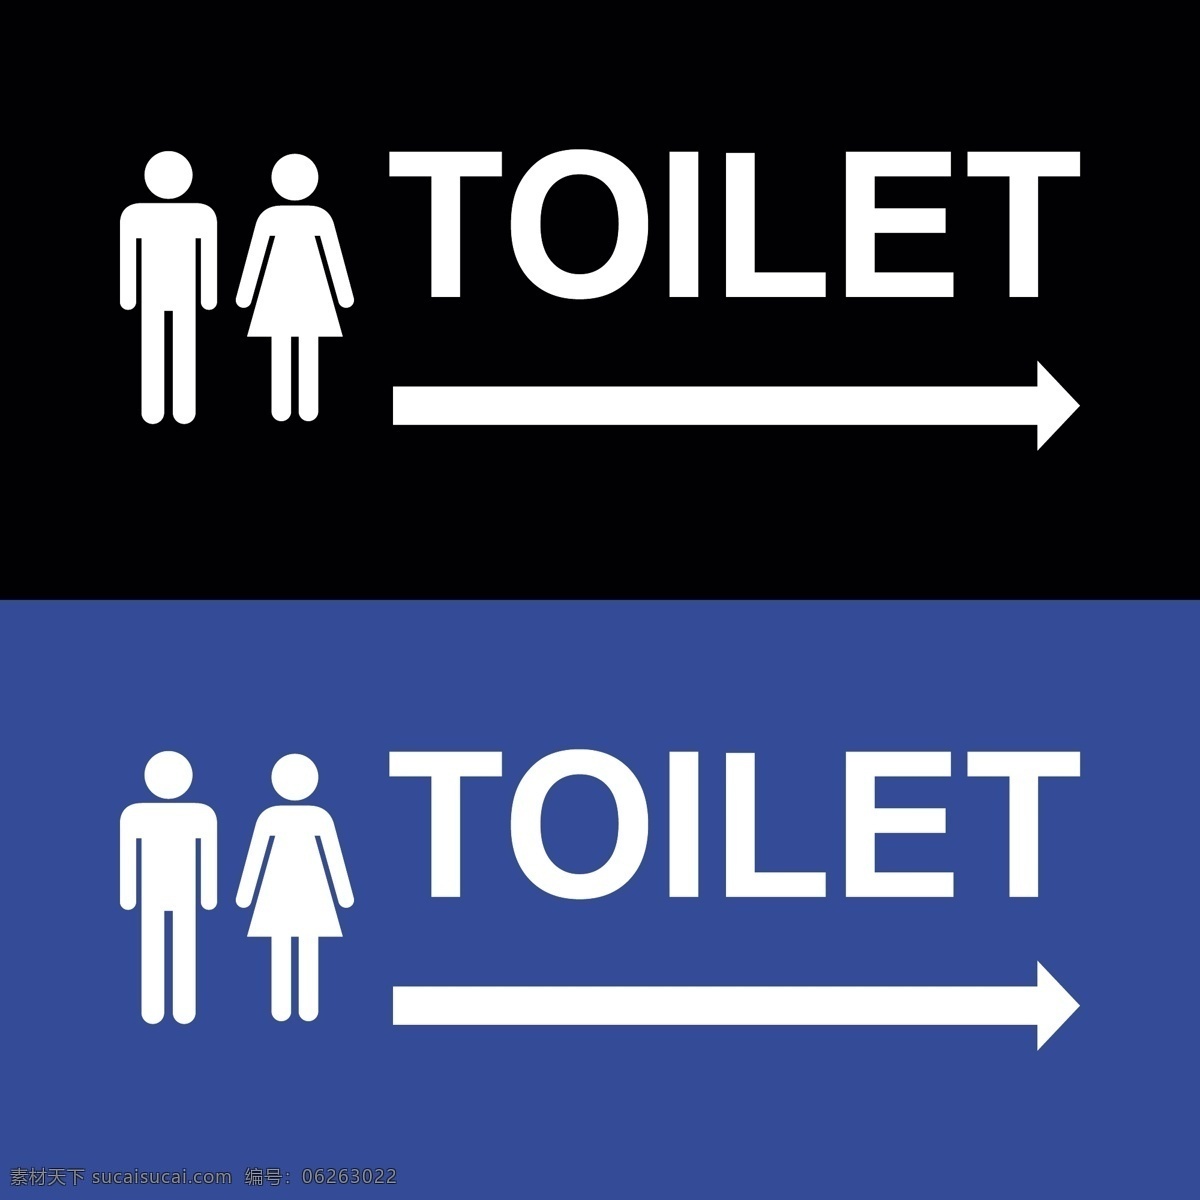 厕所标志 男女标志 淑女绅士标志 men women 公共标志 男女厕所标志 矢量 标志图标 公共标识标志